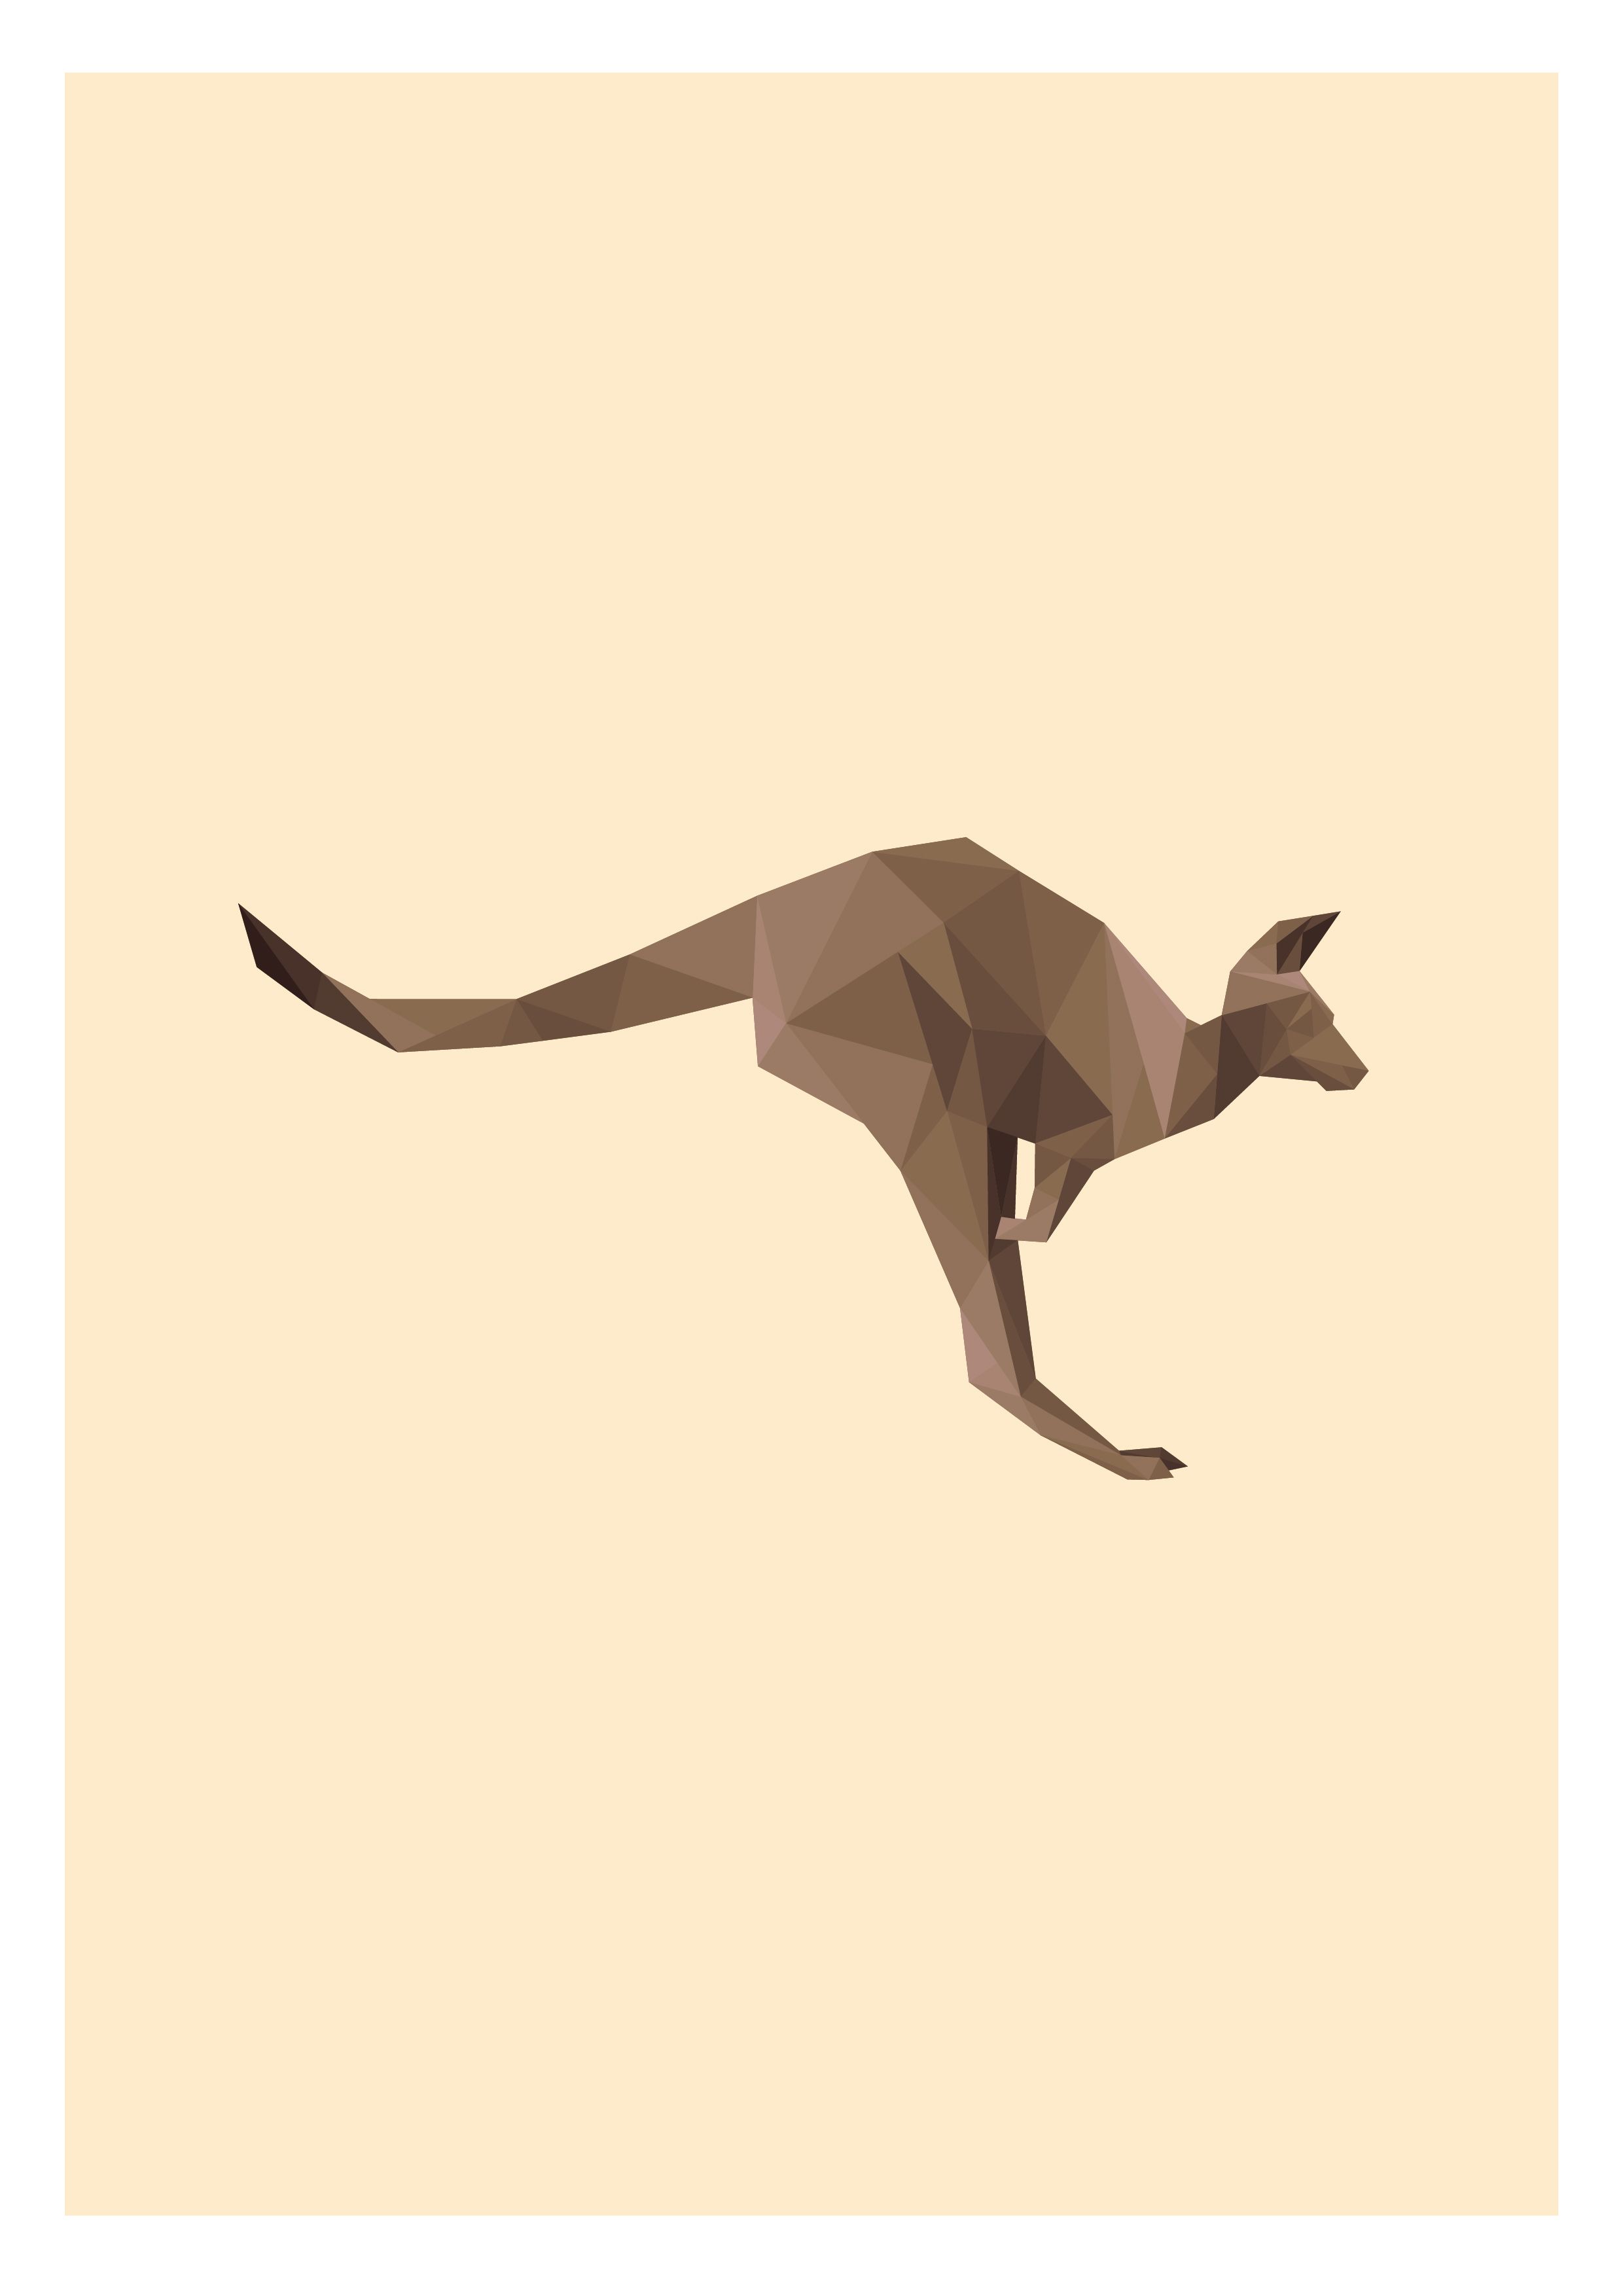 Australian Kangaroo Logo - Australian Kangaroo Illustration | Animal Illustrations ...